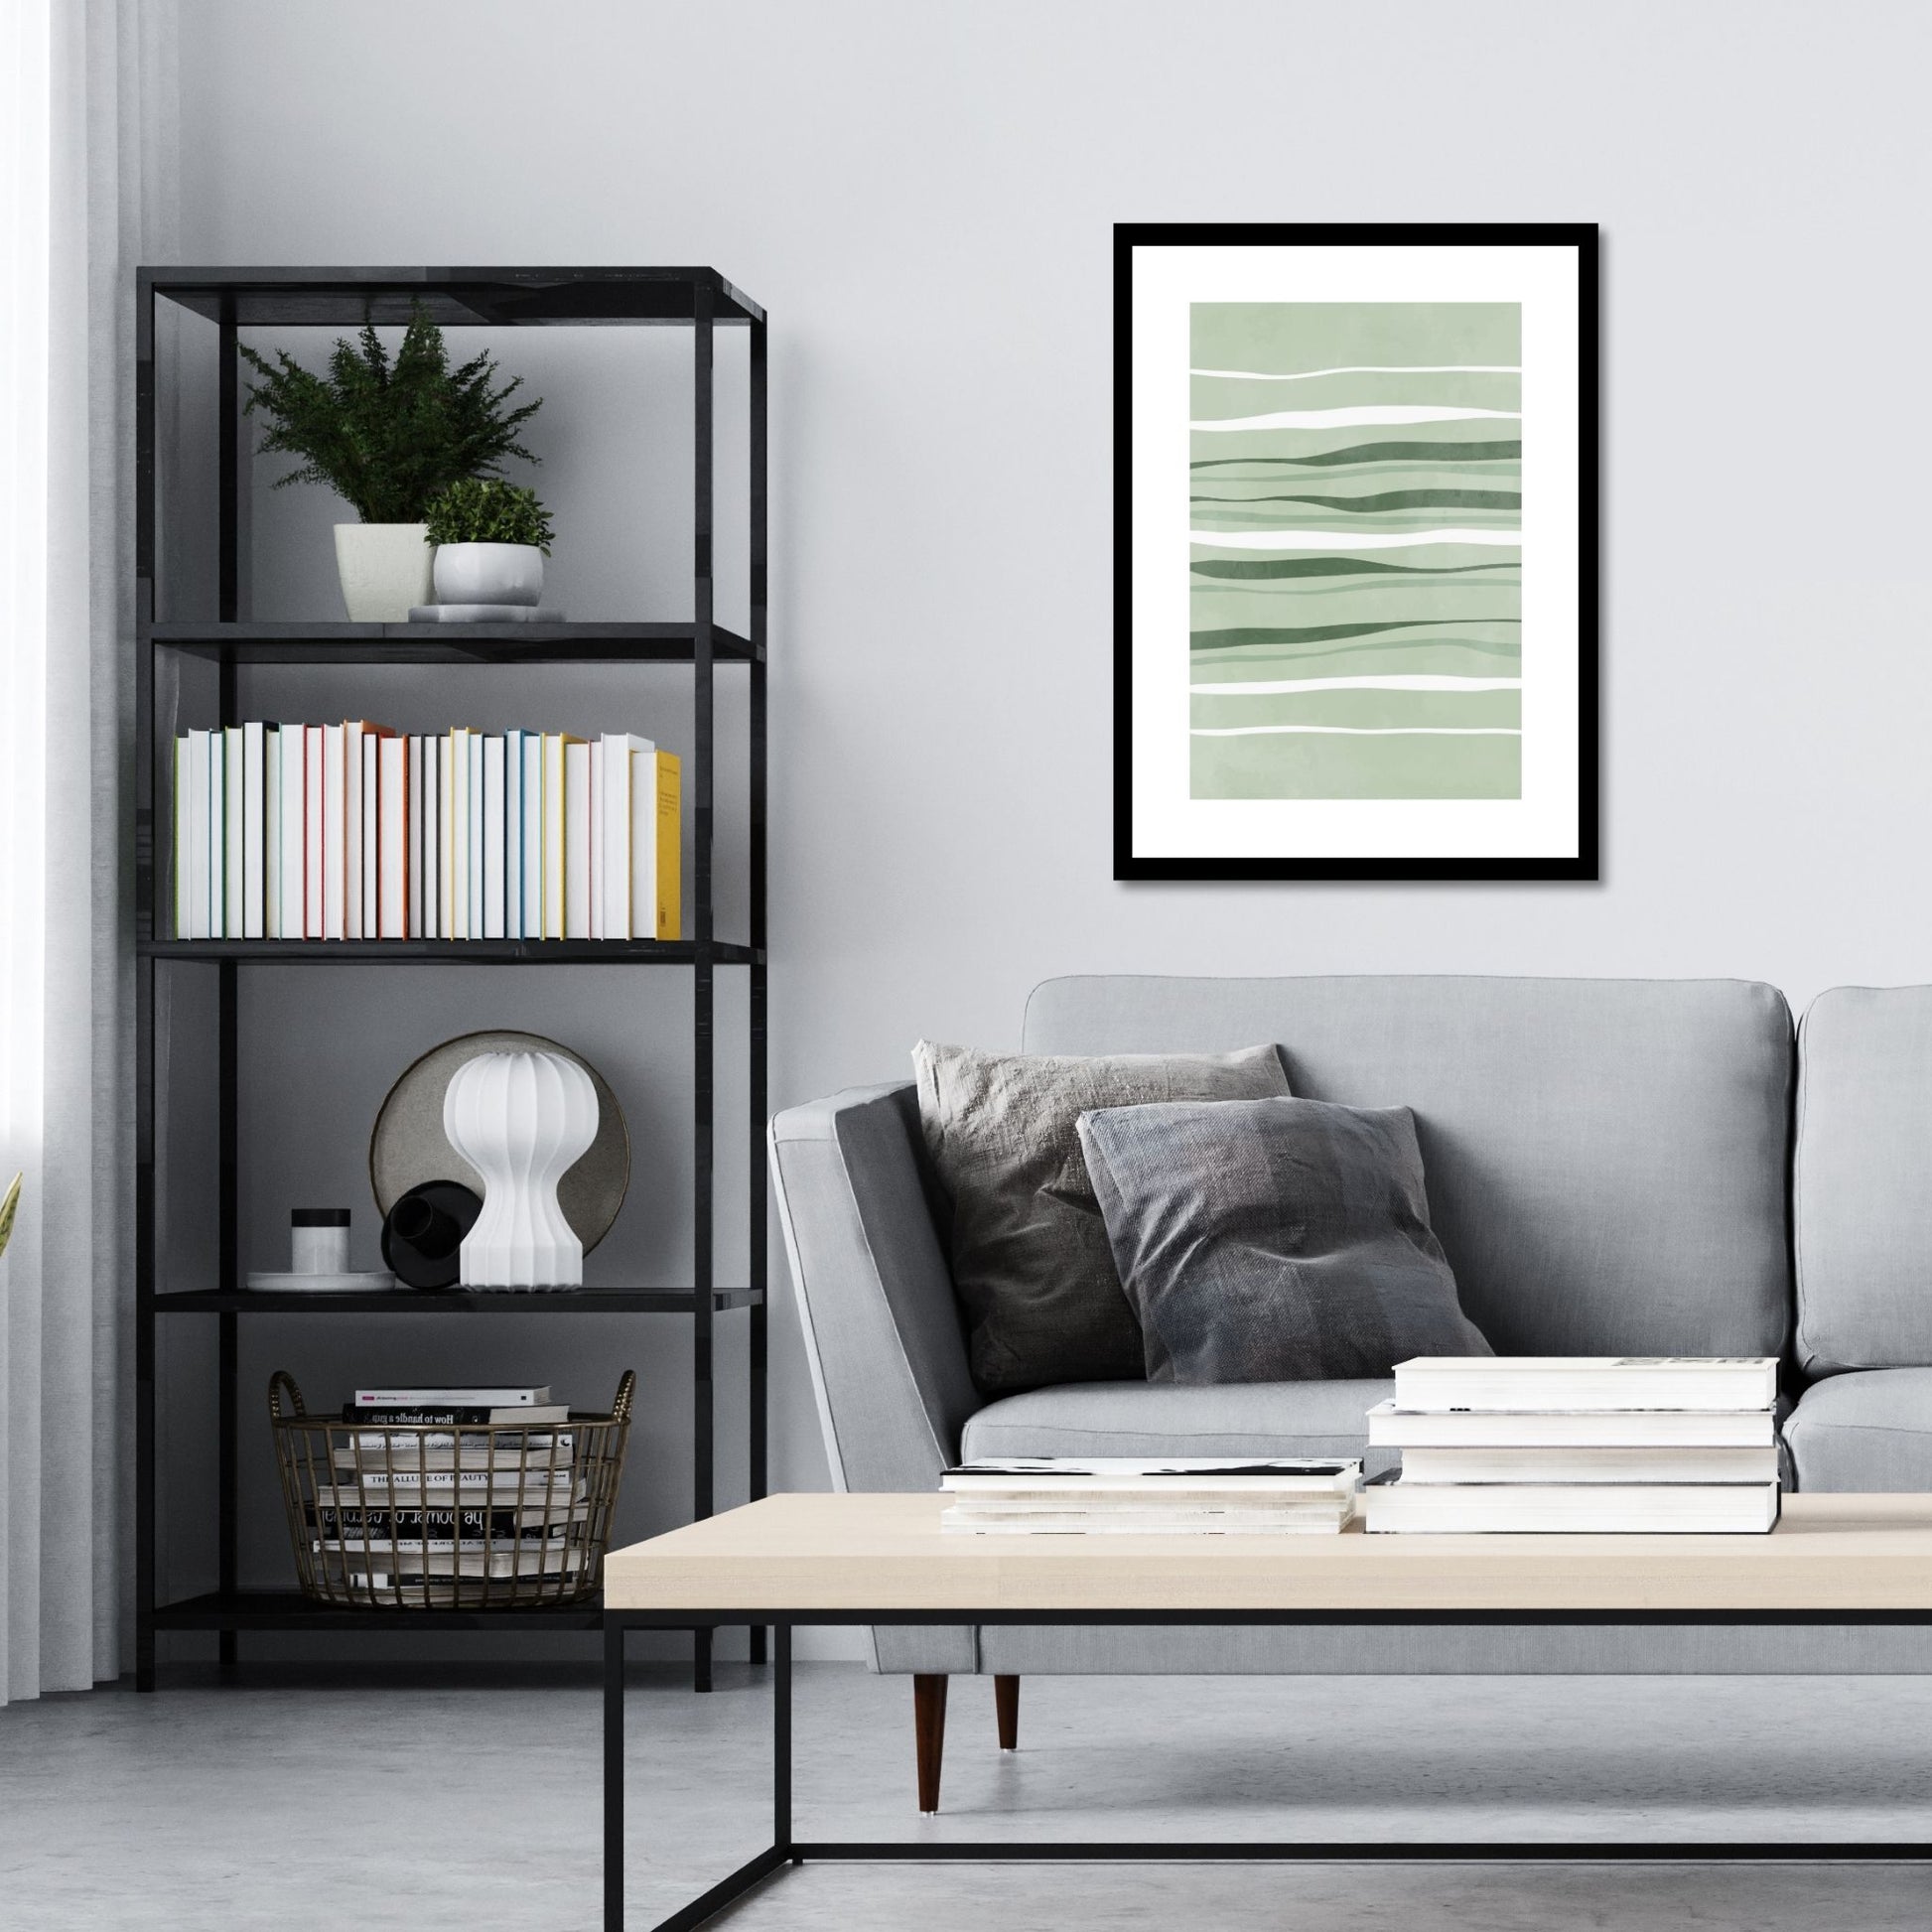 Green Abstract plakat. Med sine beroligende grønne toner og sofistikerte design, tilfører denne plakaten en følelse av ro og harmoni til ethvert rom. Illustrasjonen viser plakat i sort ramme på en vegg over en sofa.